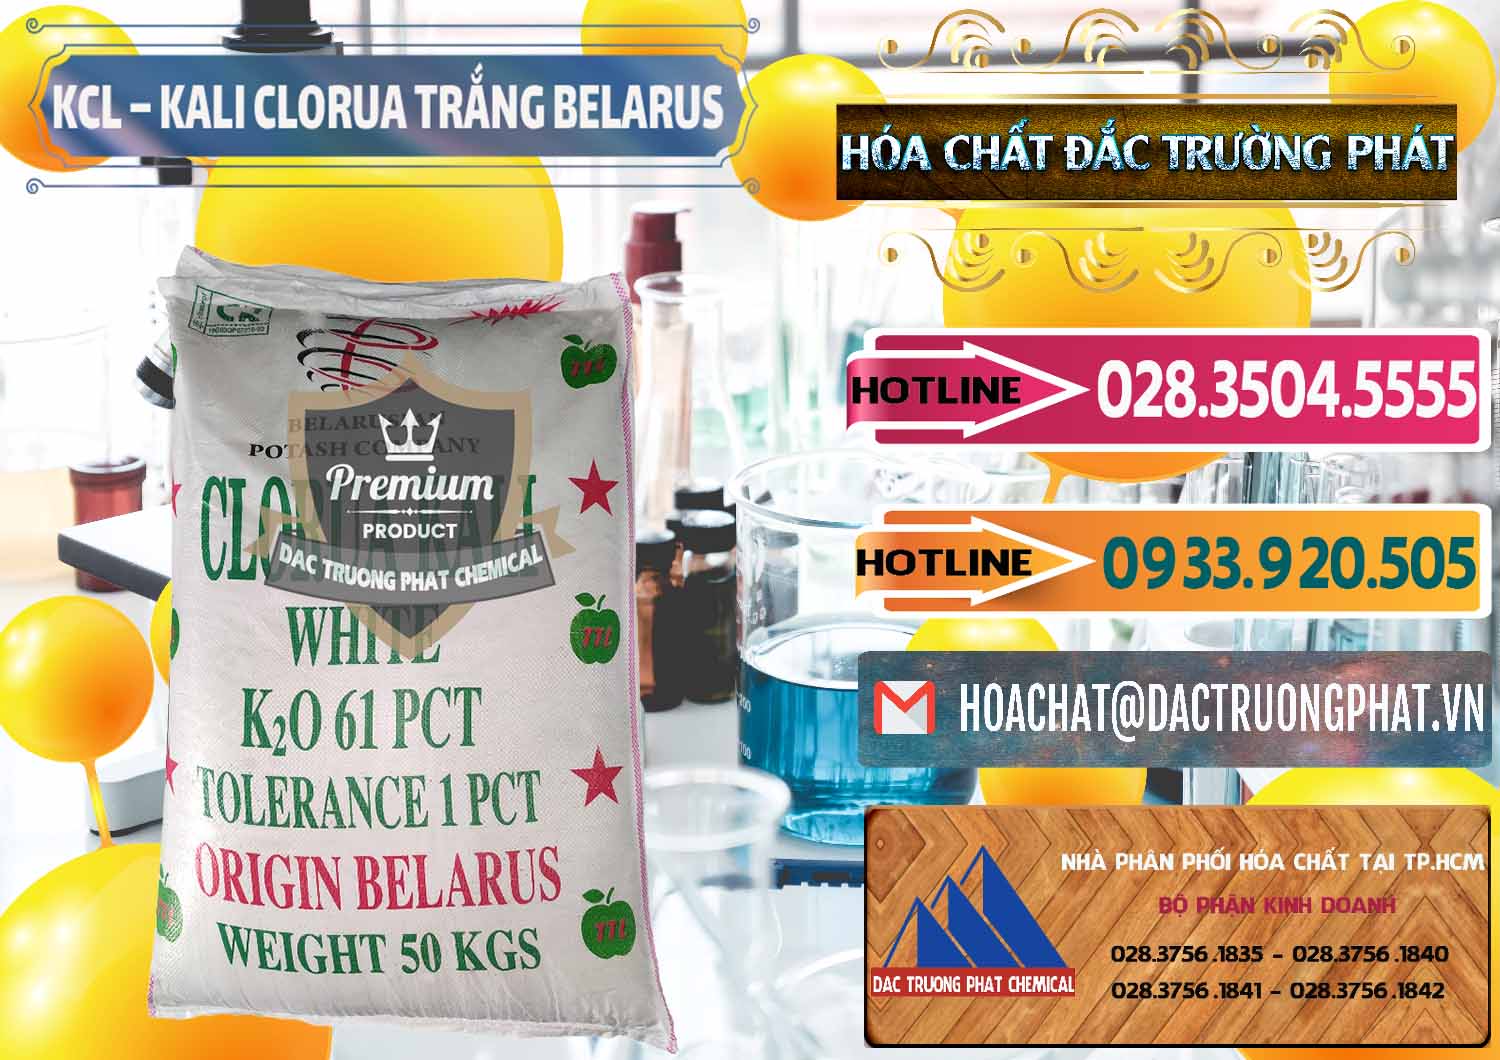 Đơn vị bán ( cung cấp ) KCL – Kali Clorua Trắng Belarus - 0085 - Cty cung cấp & nhập khẩu hóa chất tại TP.HCM - dactruongphat.vn